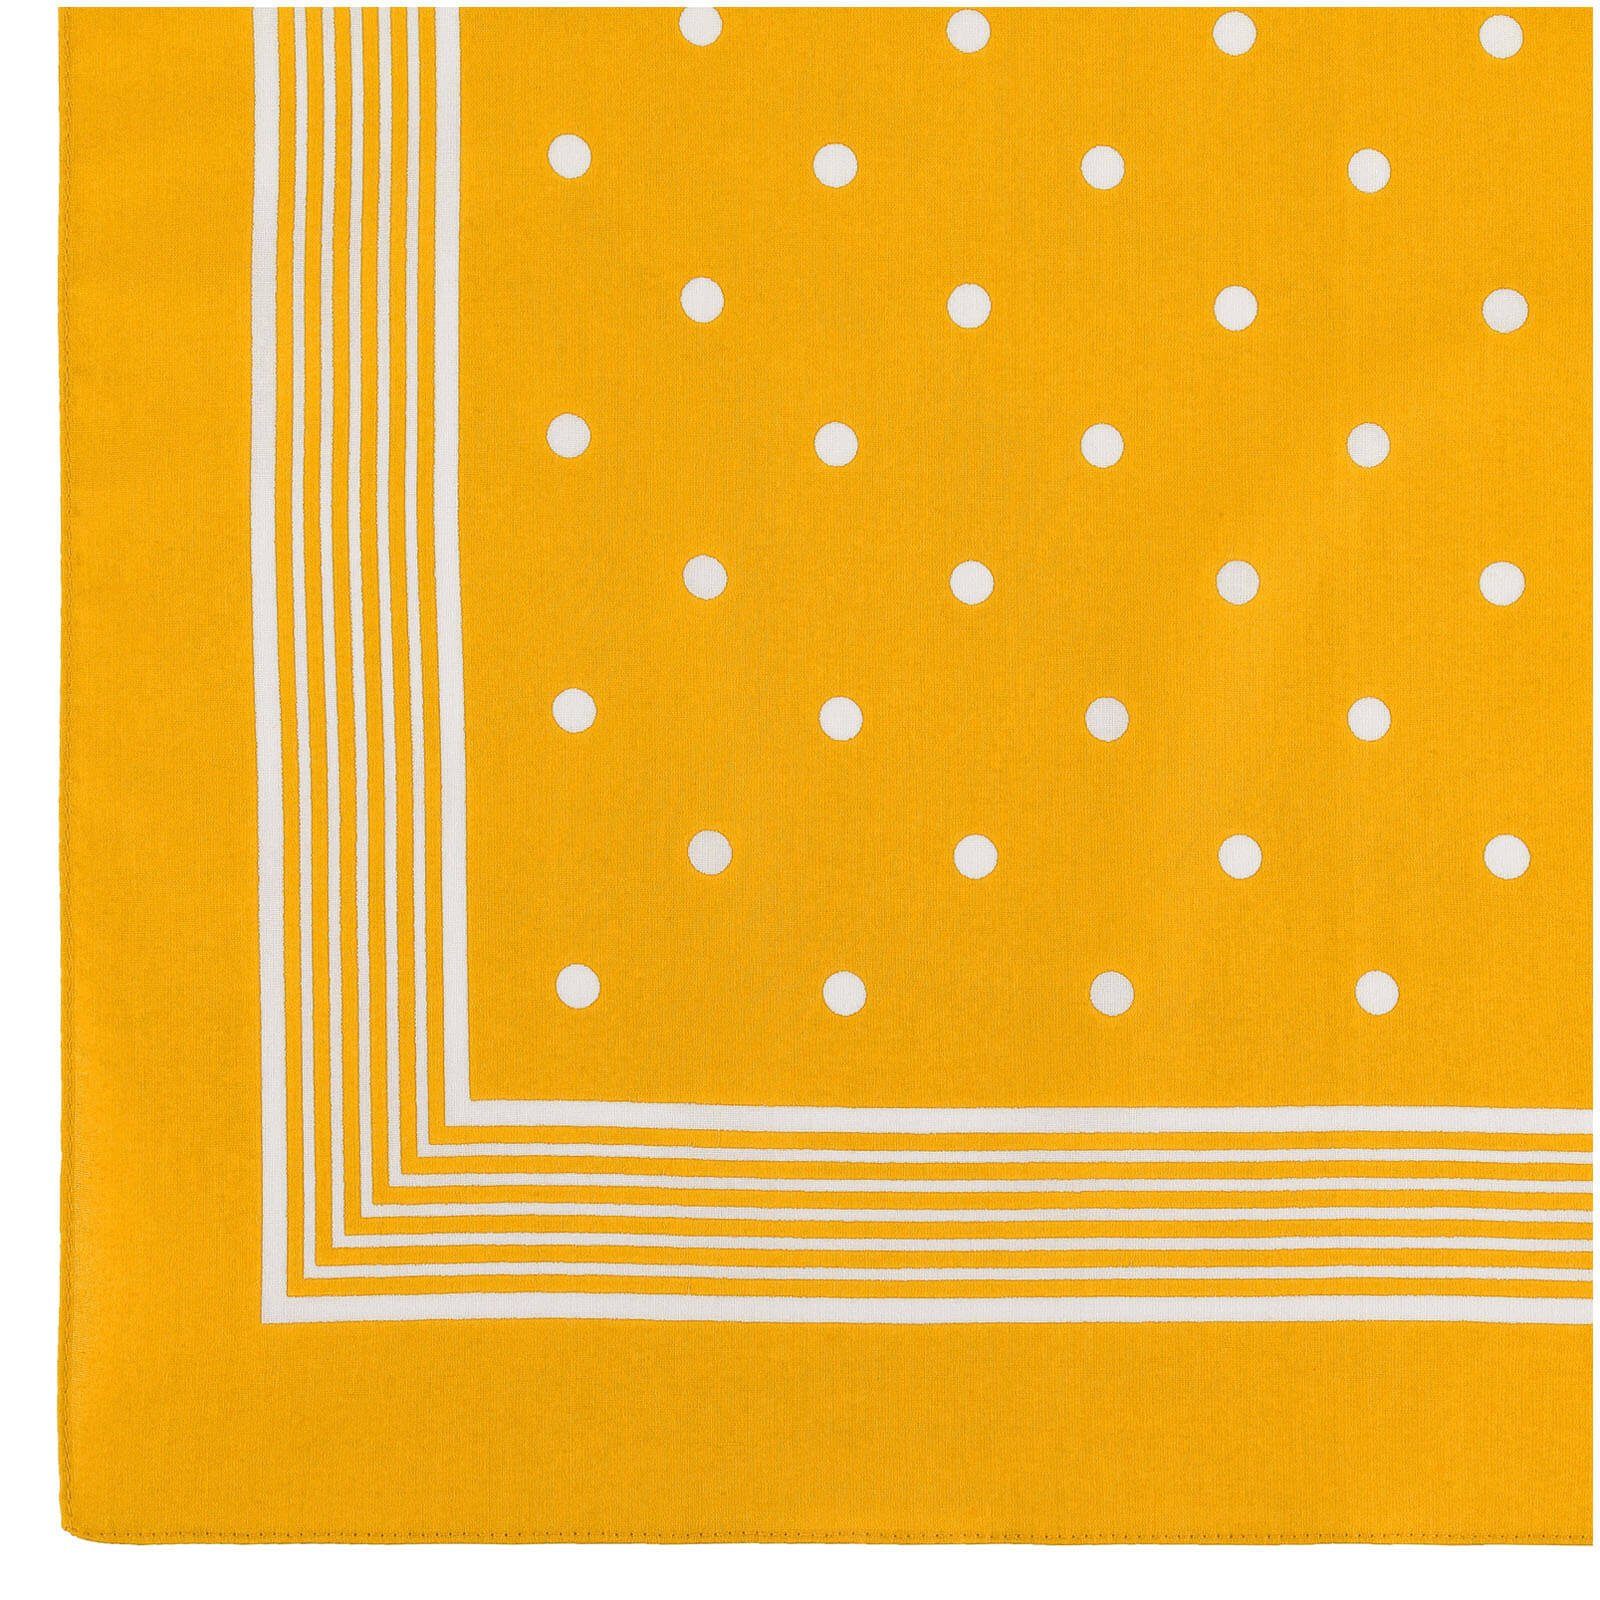 Modetuch, Tuch (72) modAS Designs cm- Vierecktuch in Gelb Farben aus ca. Bandana Kopftuch 54x54 Baumwolle mit verschiedenen Punkte und